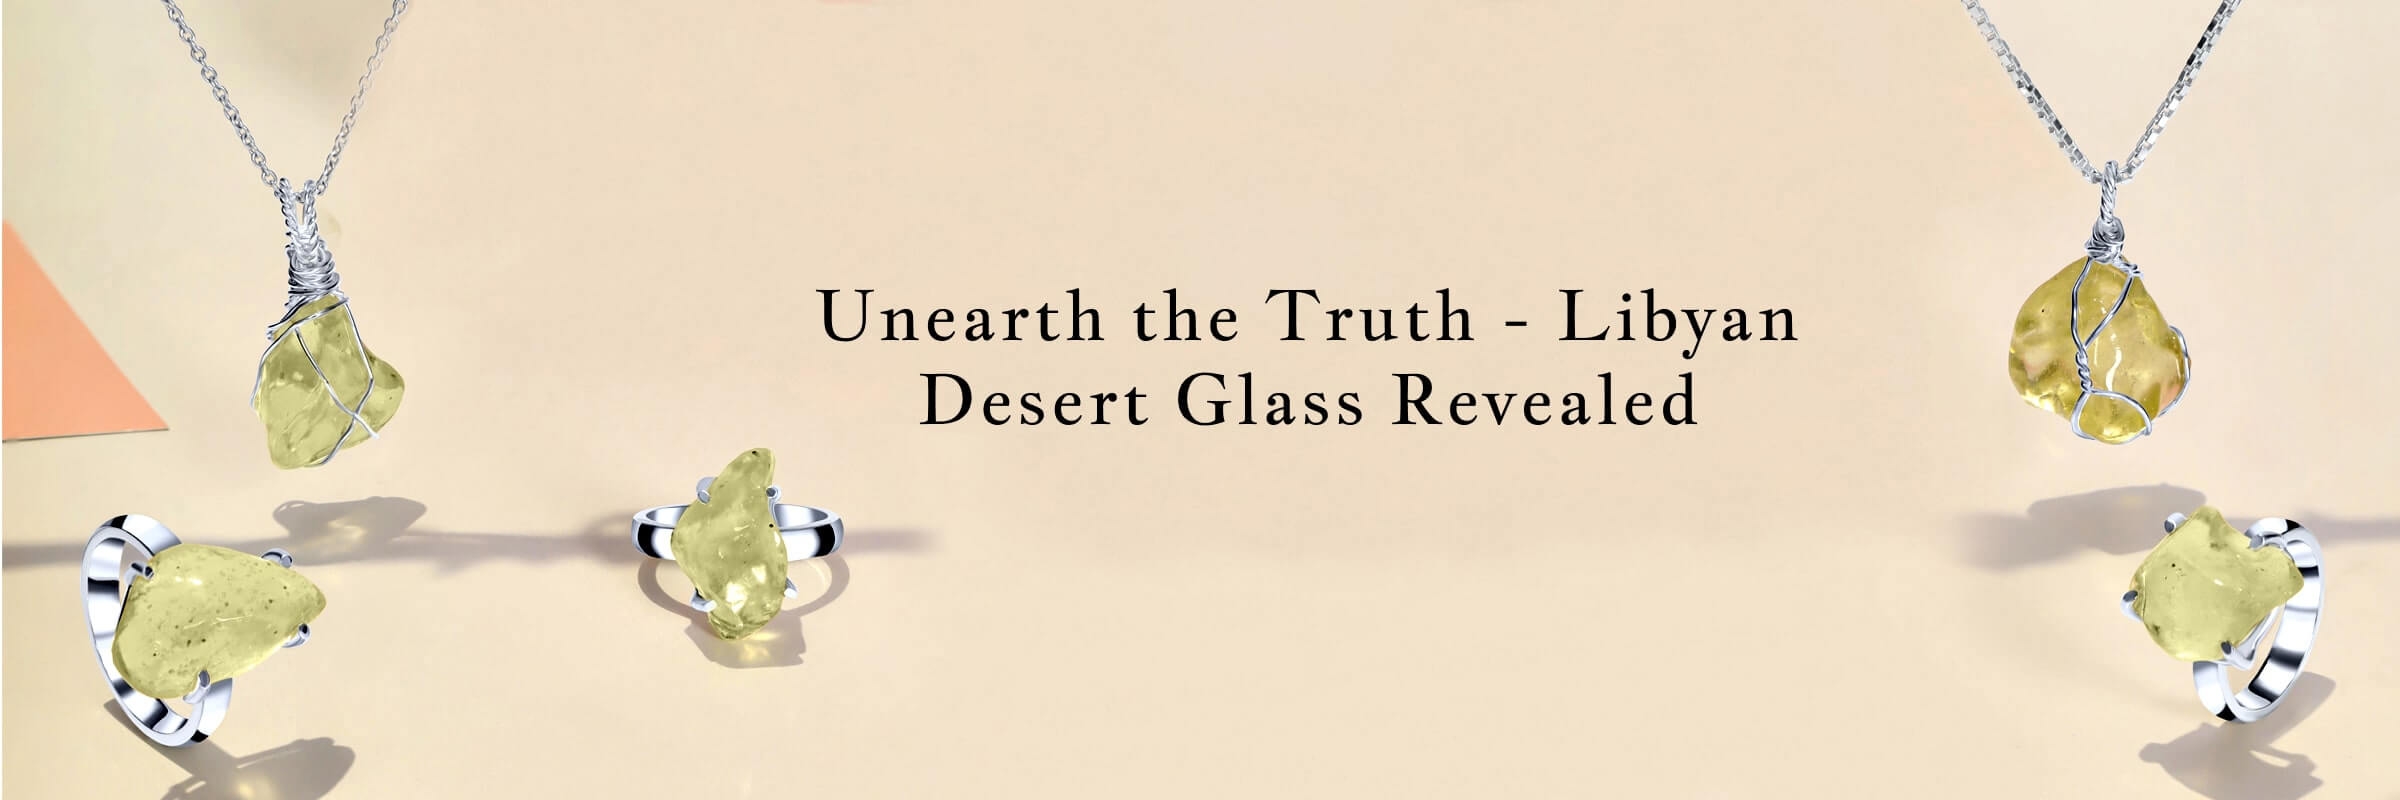 Libyan Desert Glass: Facts